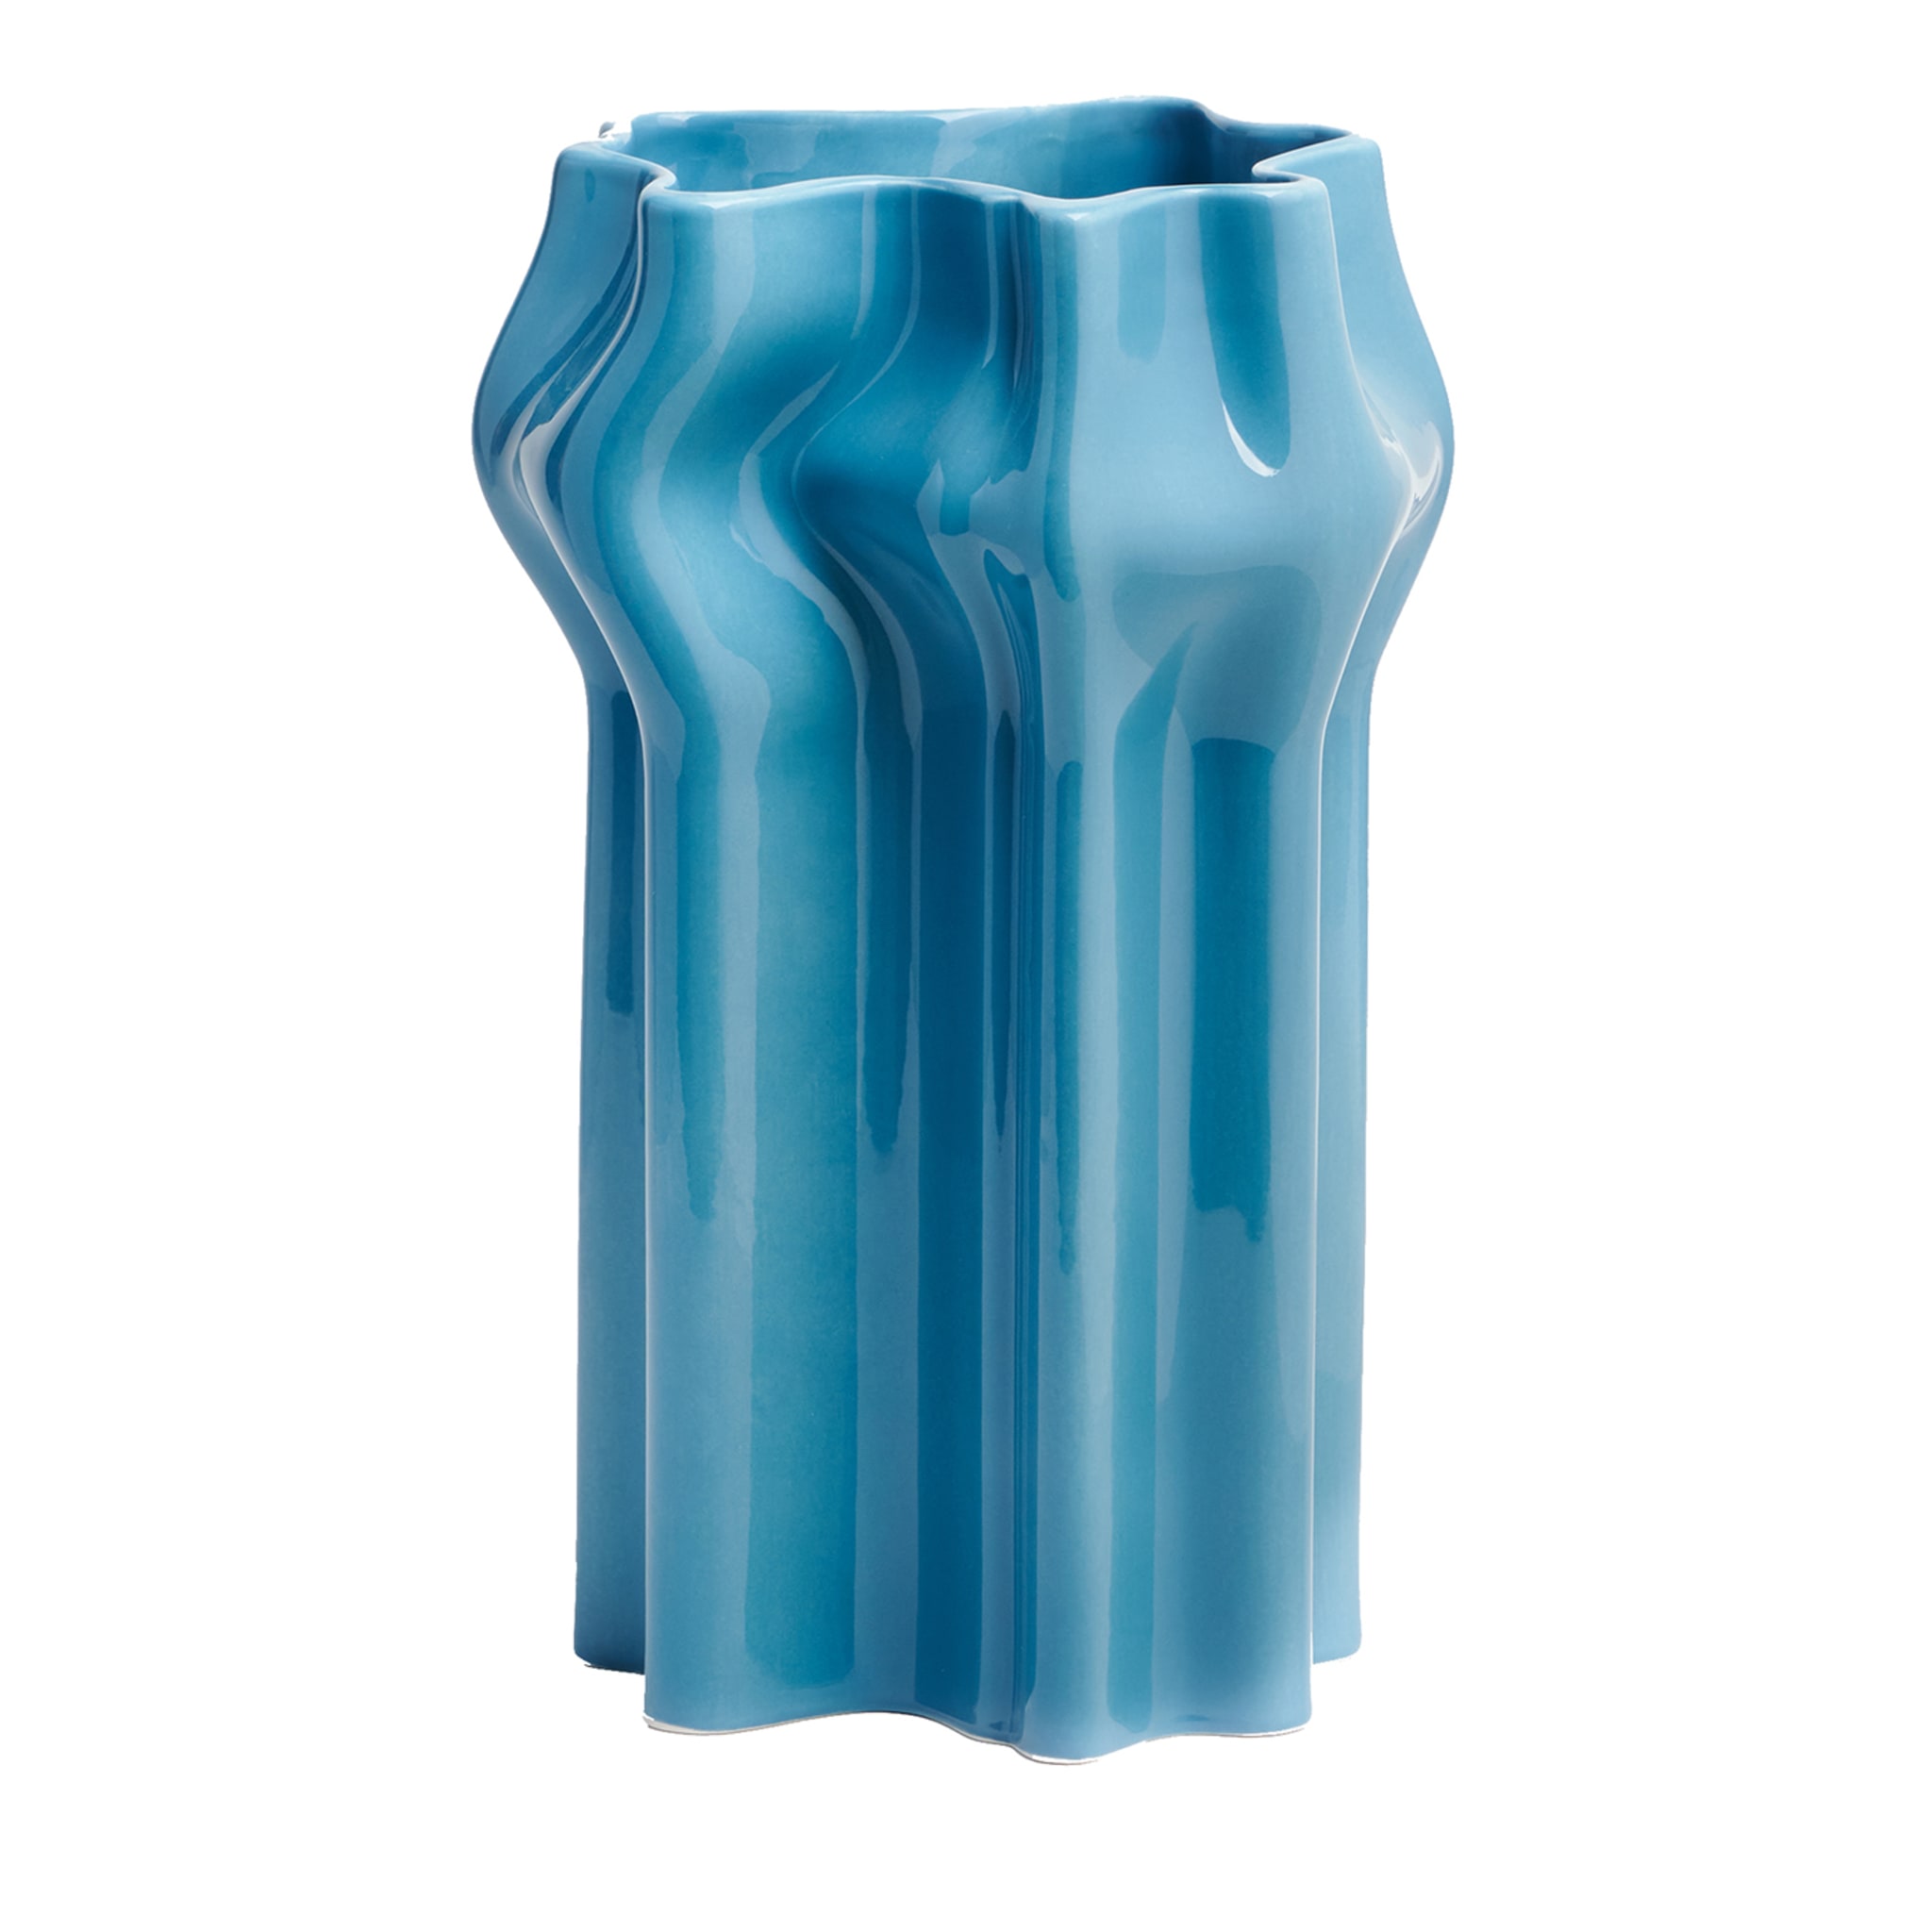 Gonfiato Turquoise Vase - Main view